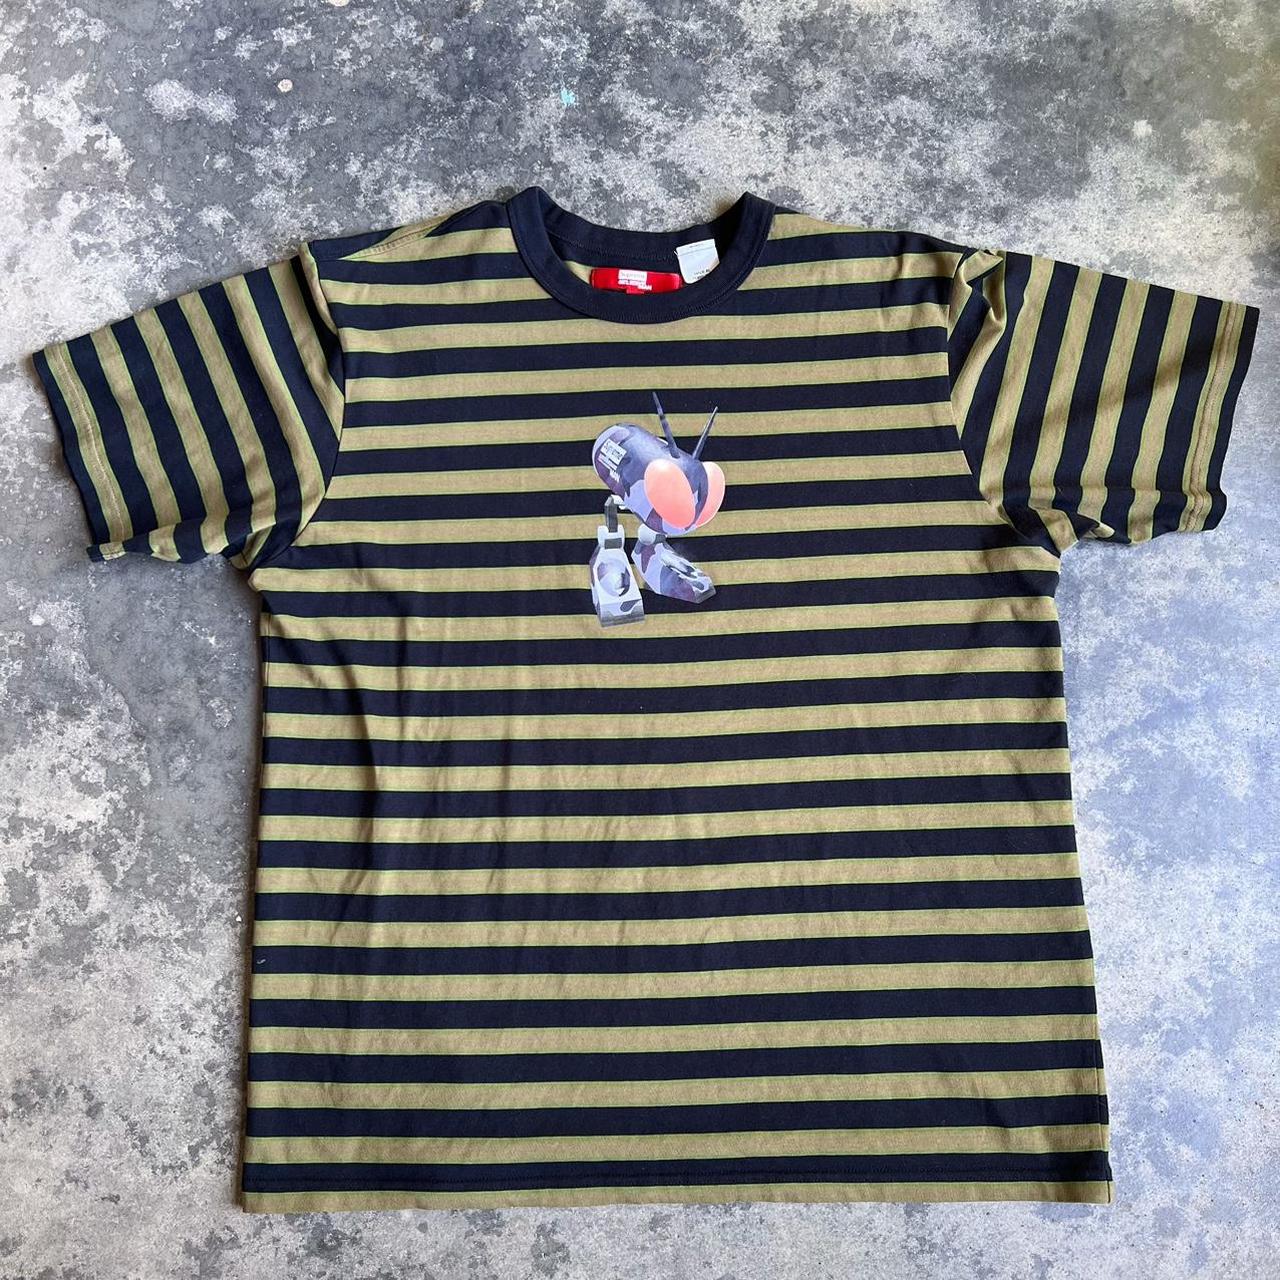 Supreme x Snoopy T-Shirt BLACK